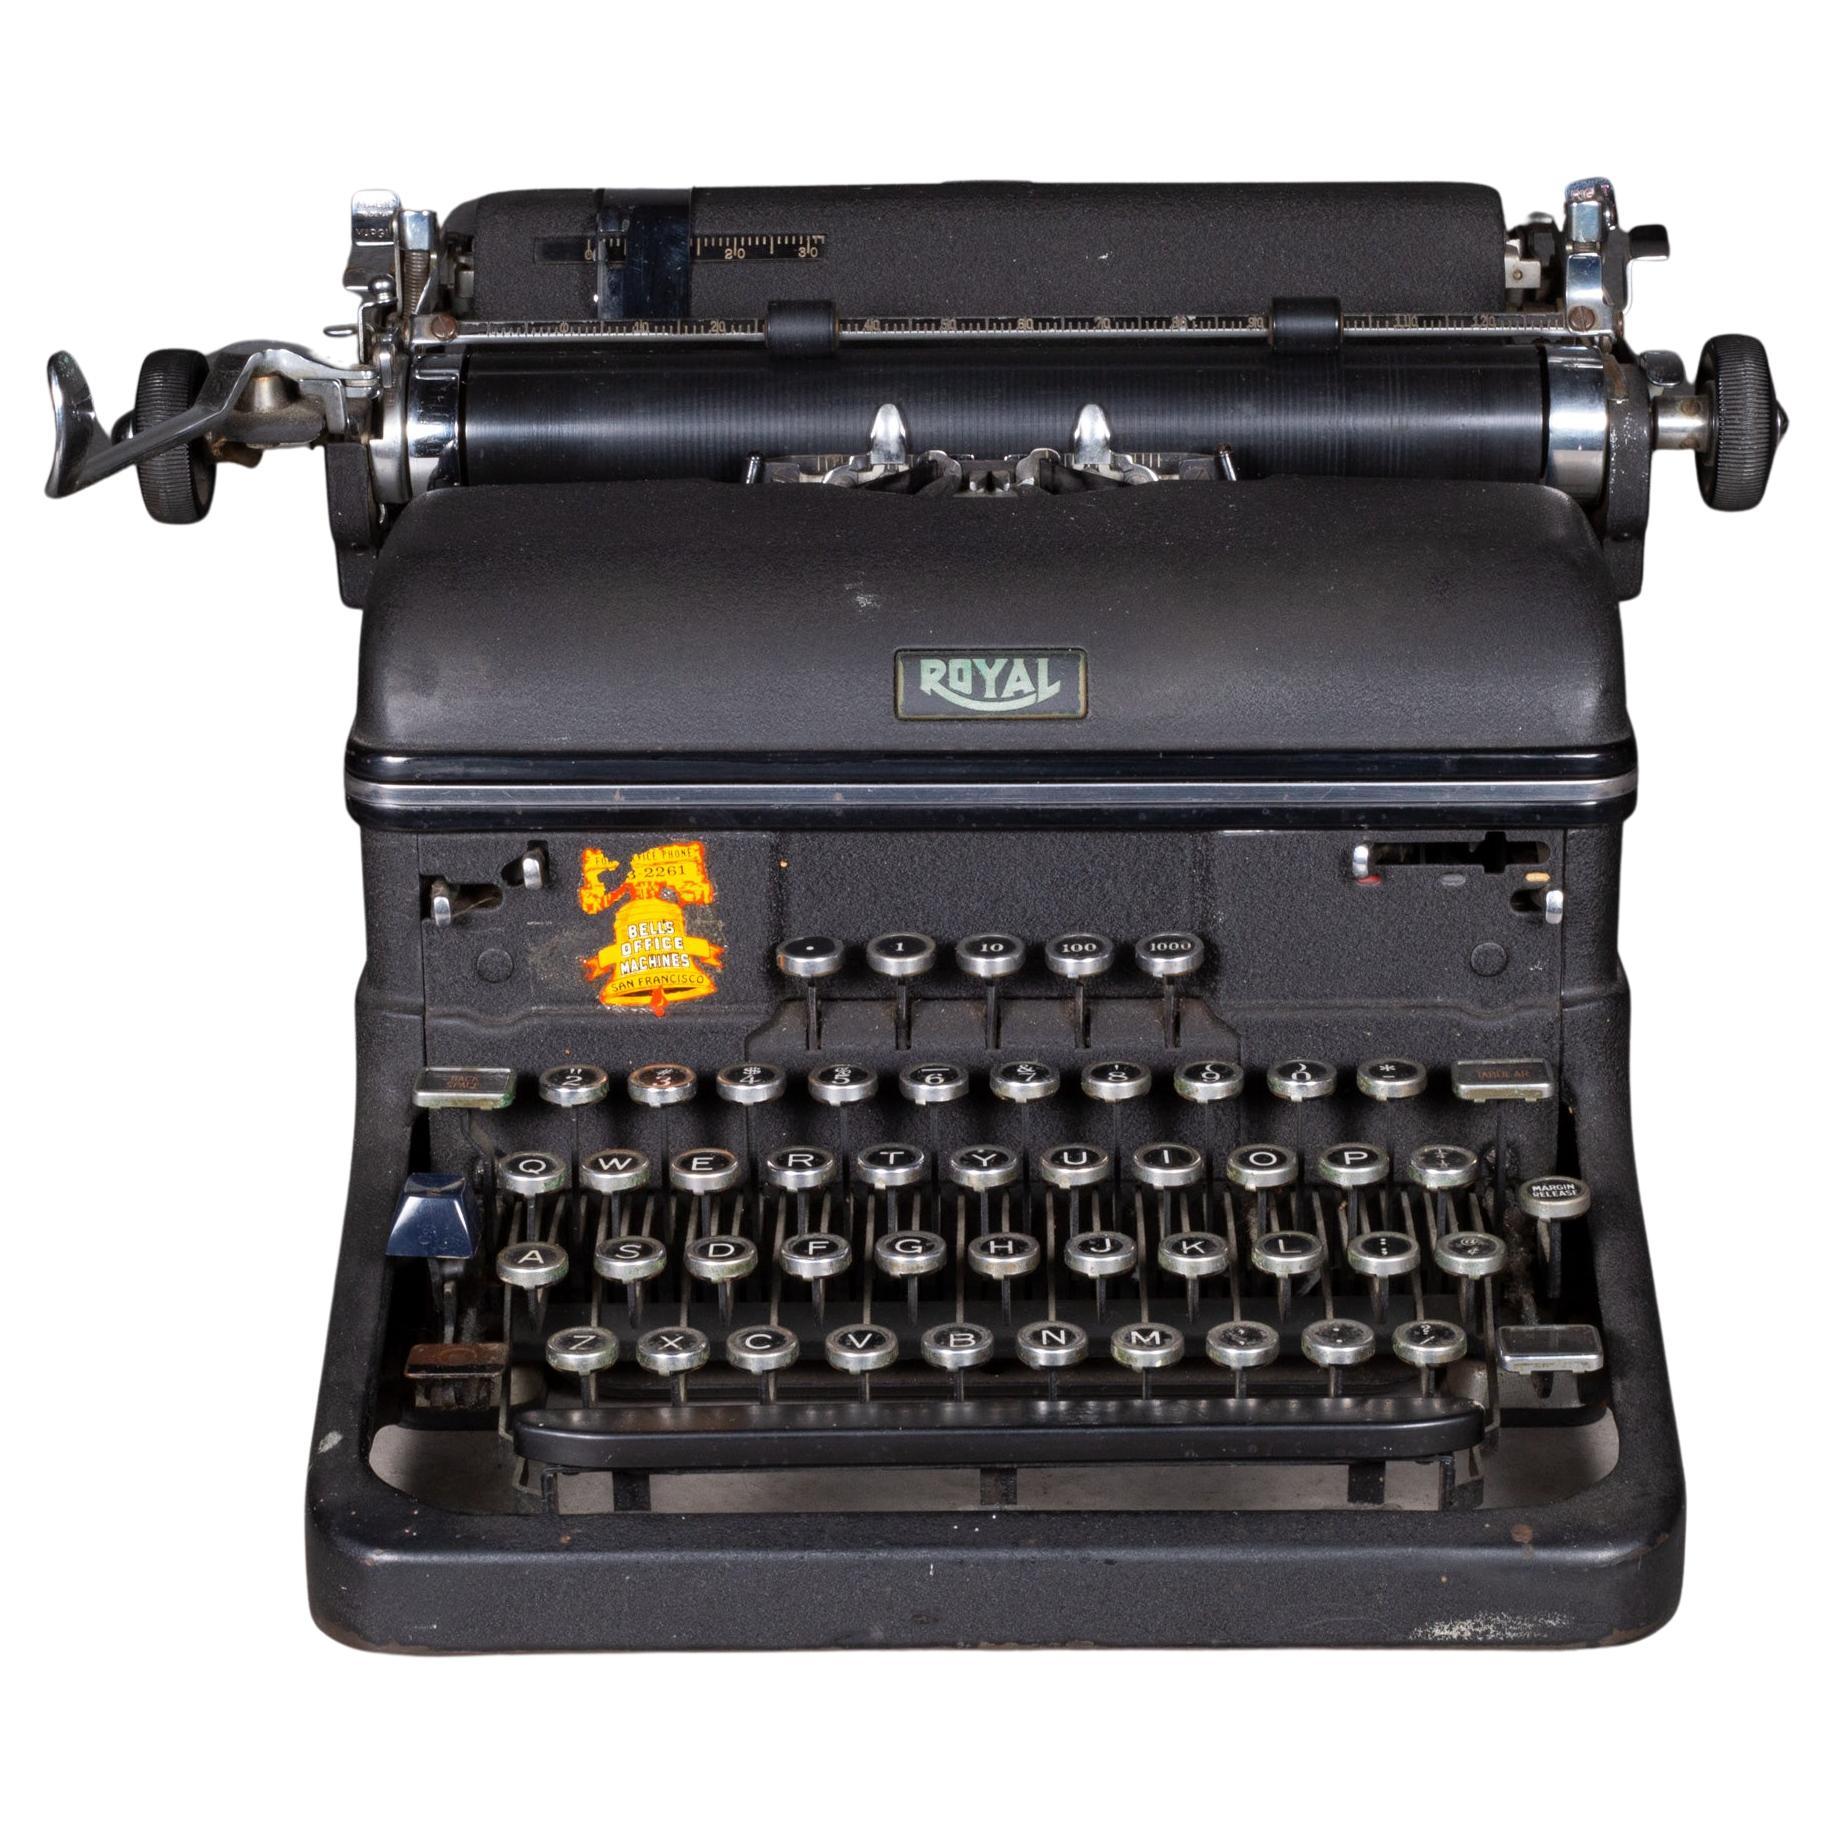 Antique Royal "Magic Margin" Typewriter, circa 1940